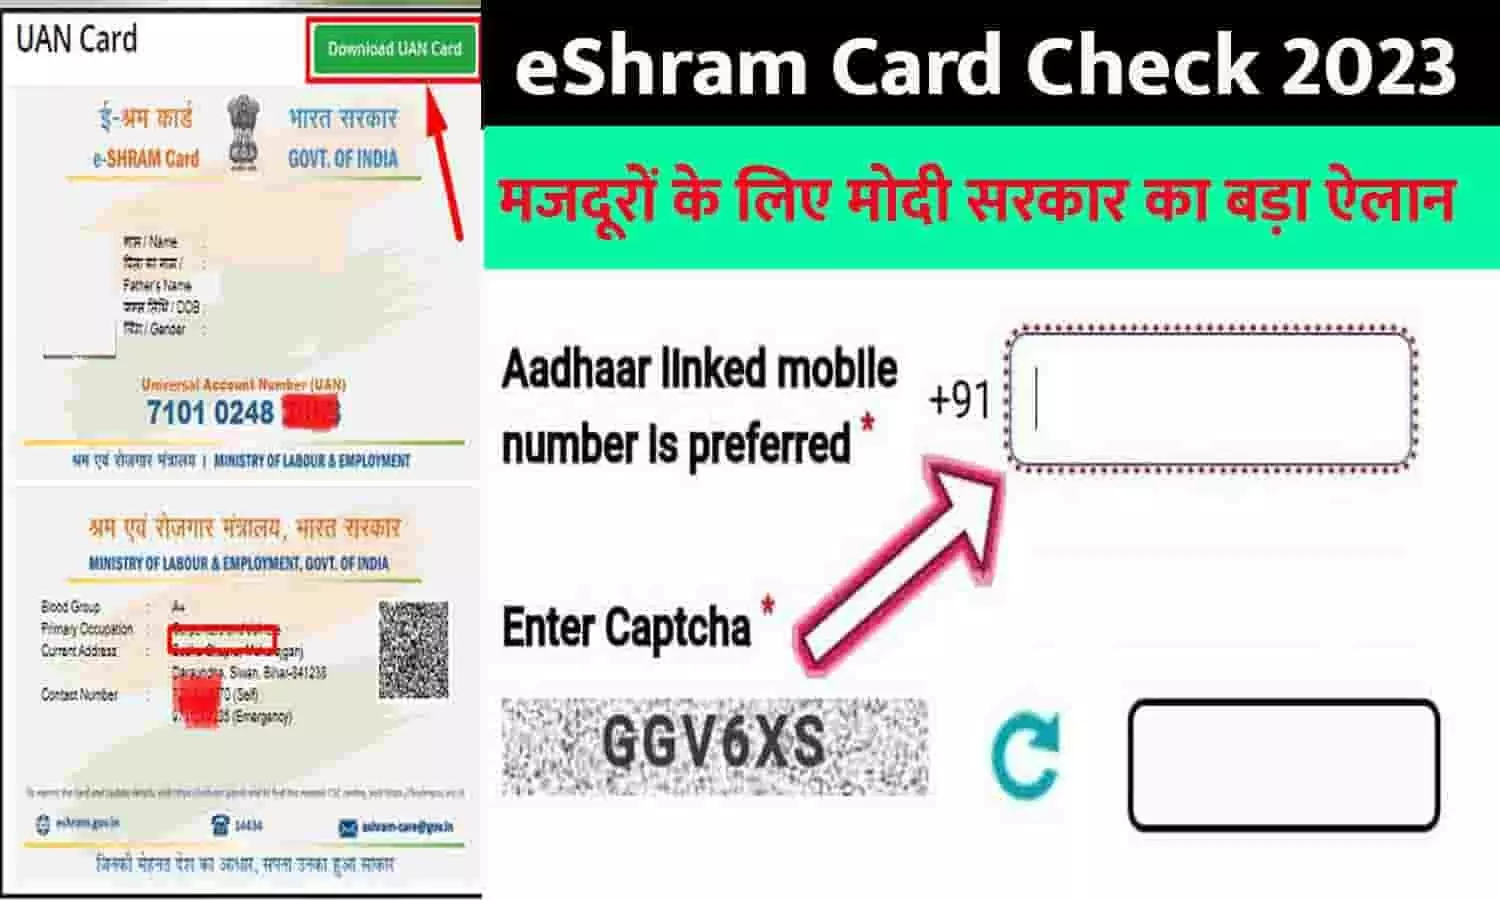 eShram Card Check 2023: करोड़ों मजदूरों के लिए मोदी सरकार का बड़ा ऐलान, मिलेगी यह सुविधा, हो गई बल्ले-बल्ले, तुरंत ध्यान दे